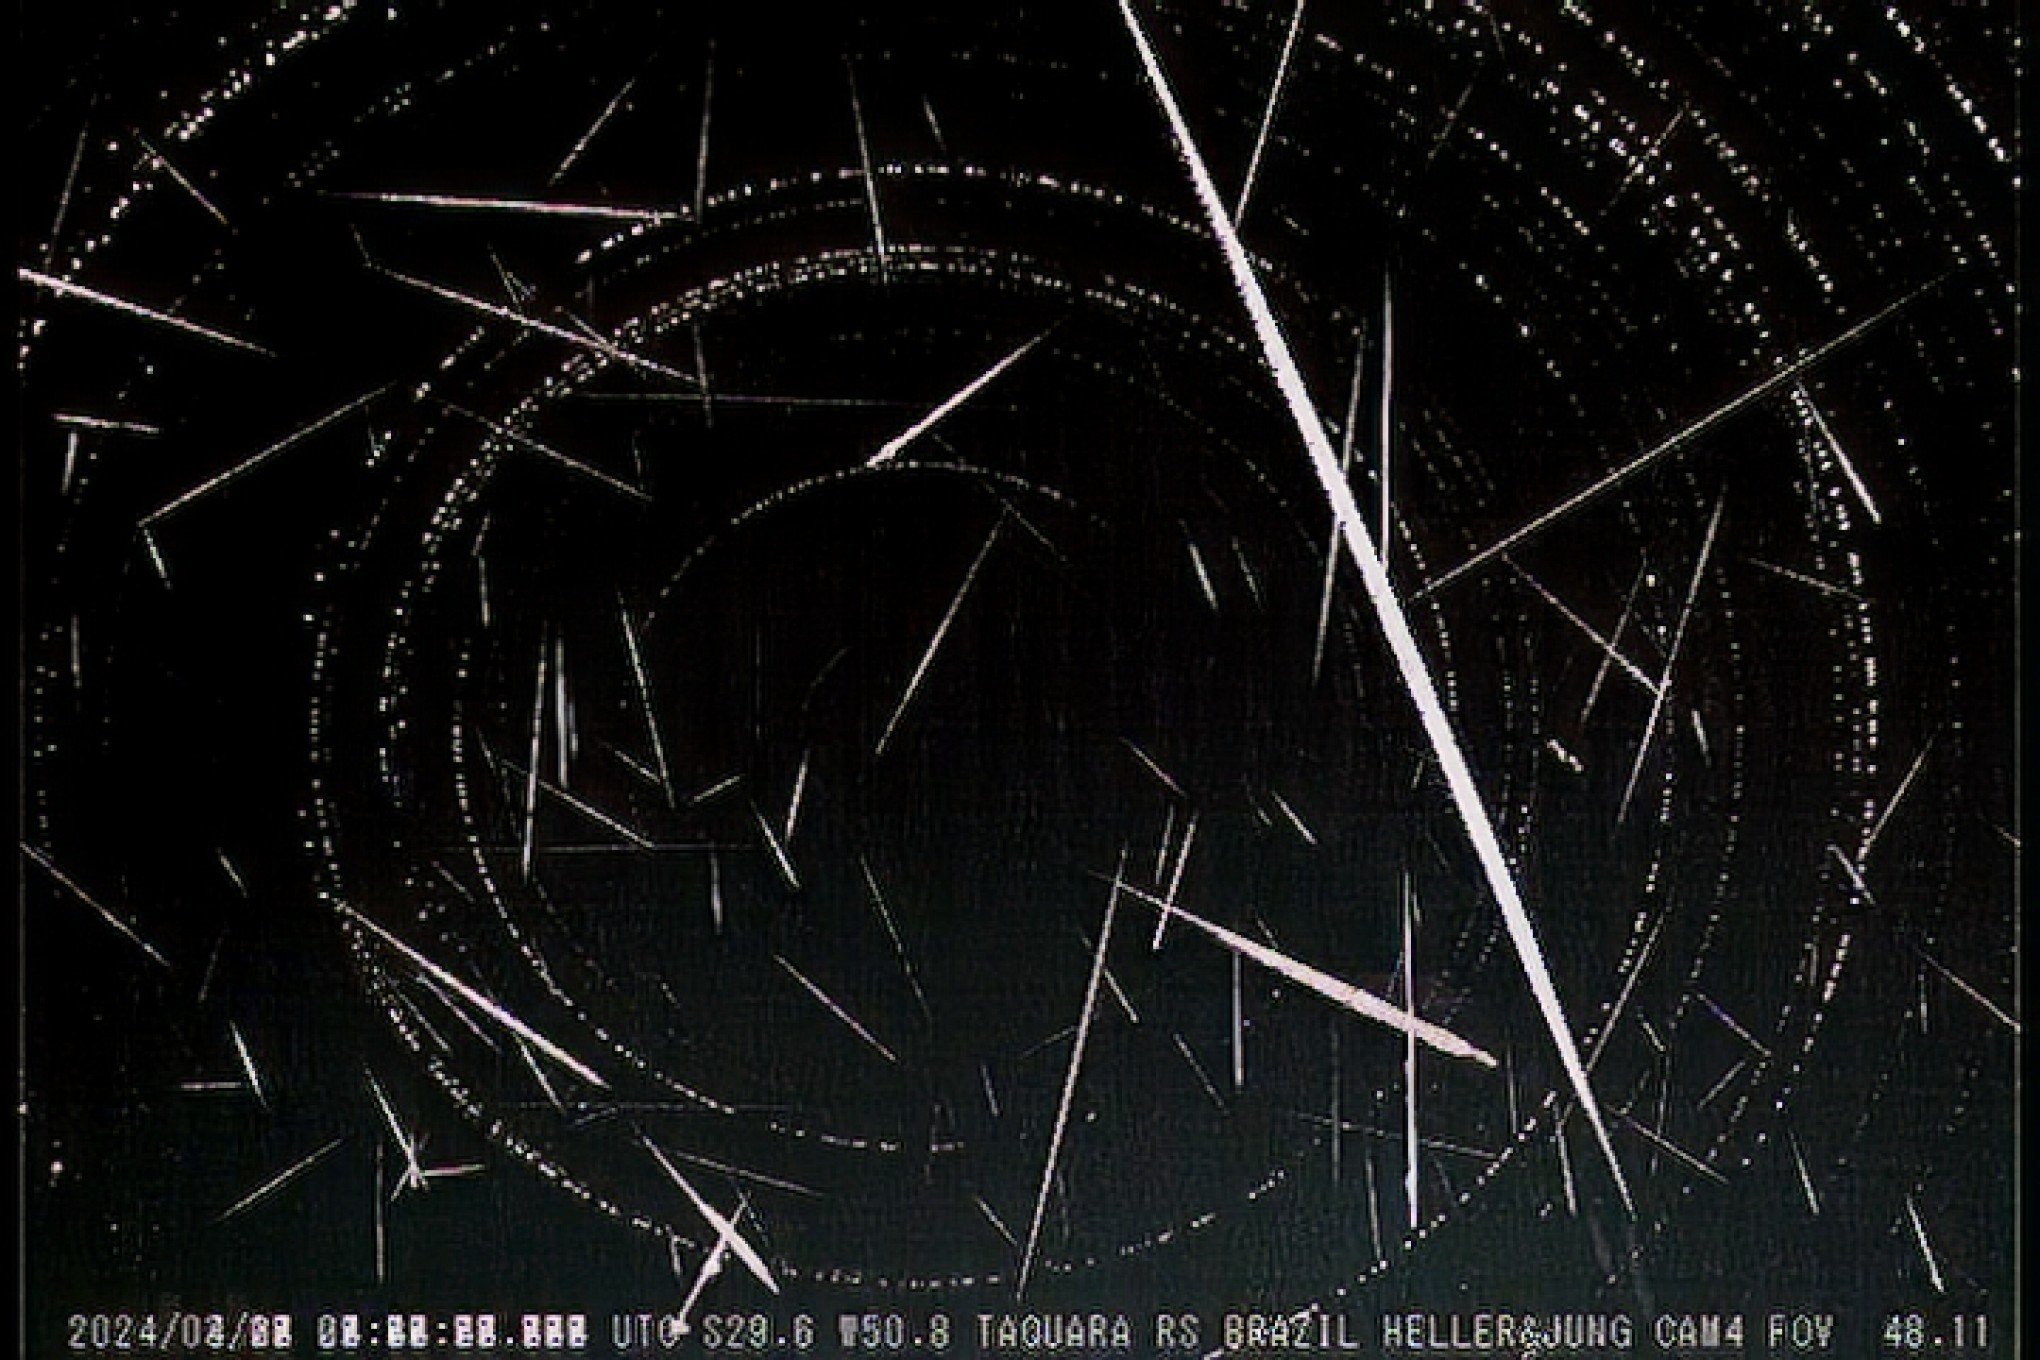 Duas chuvas de meteoros prometem brilhar a noite de abril no RS; saiba datas